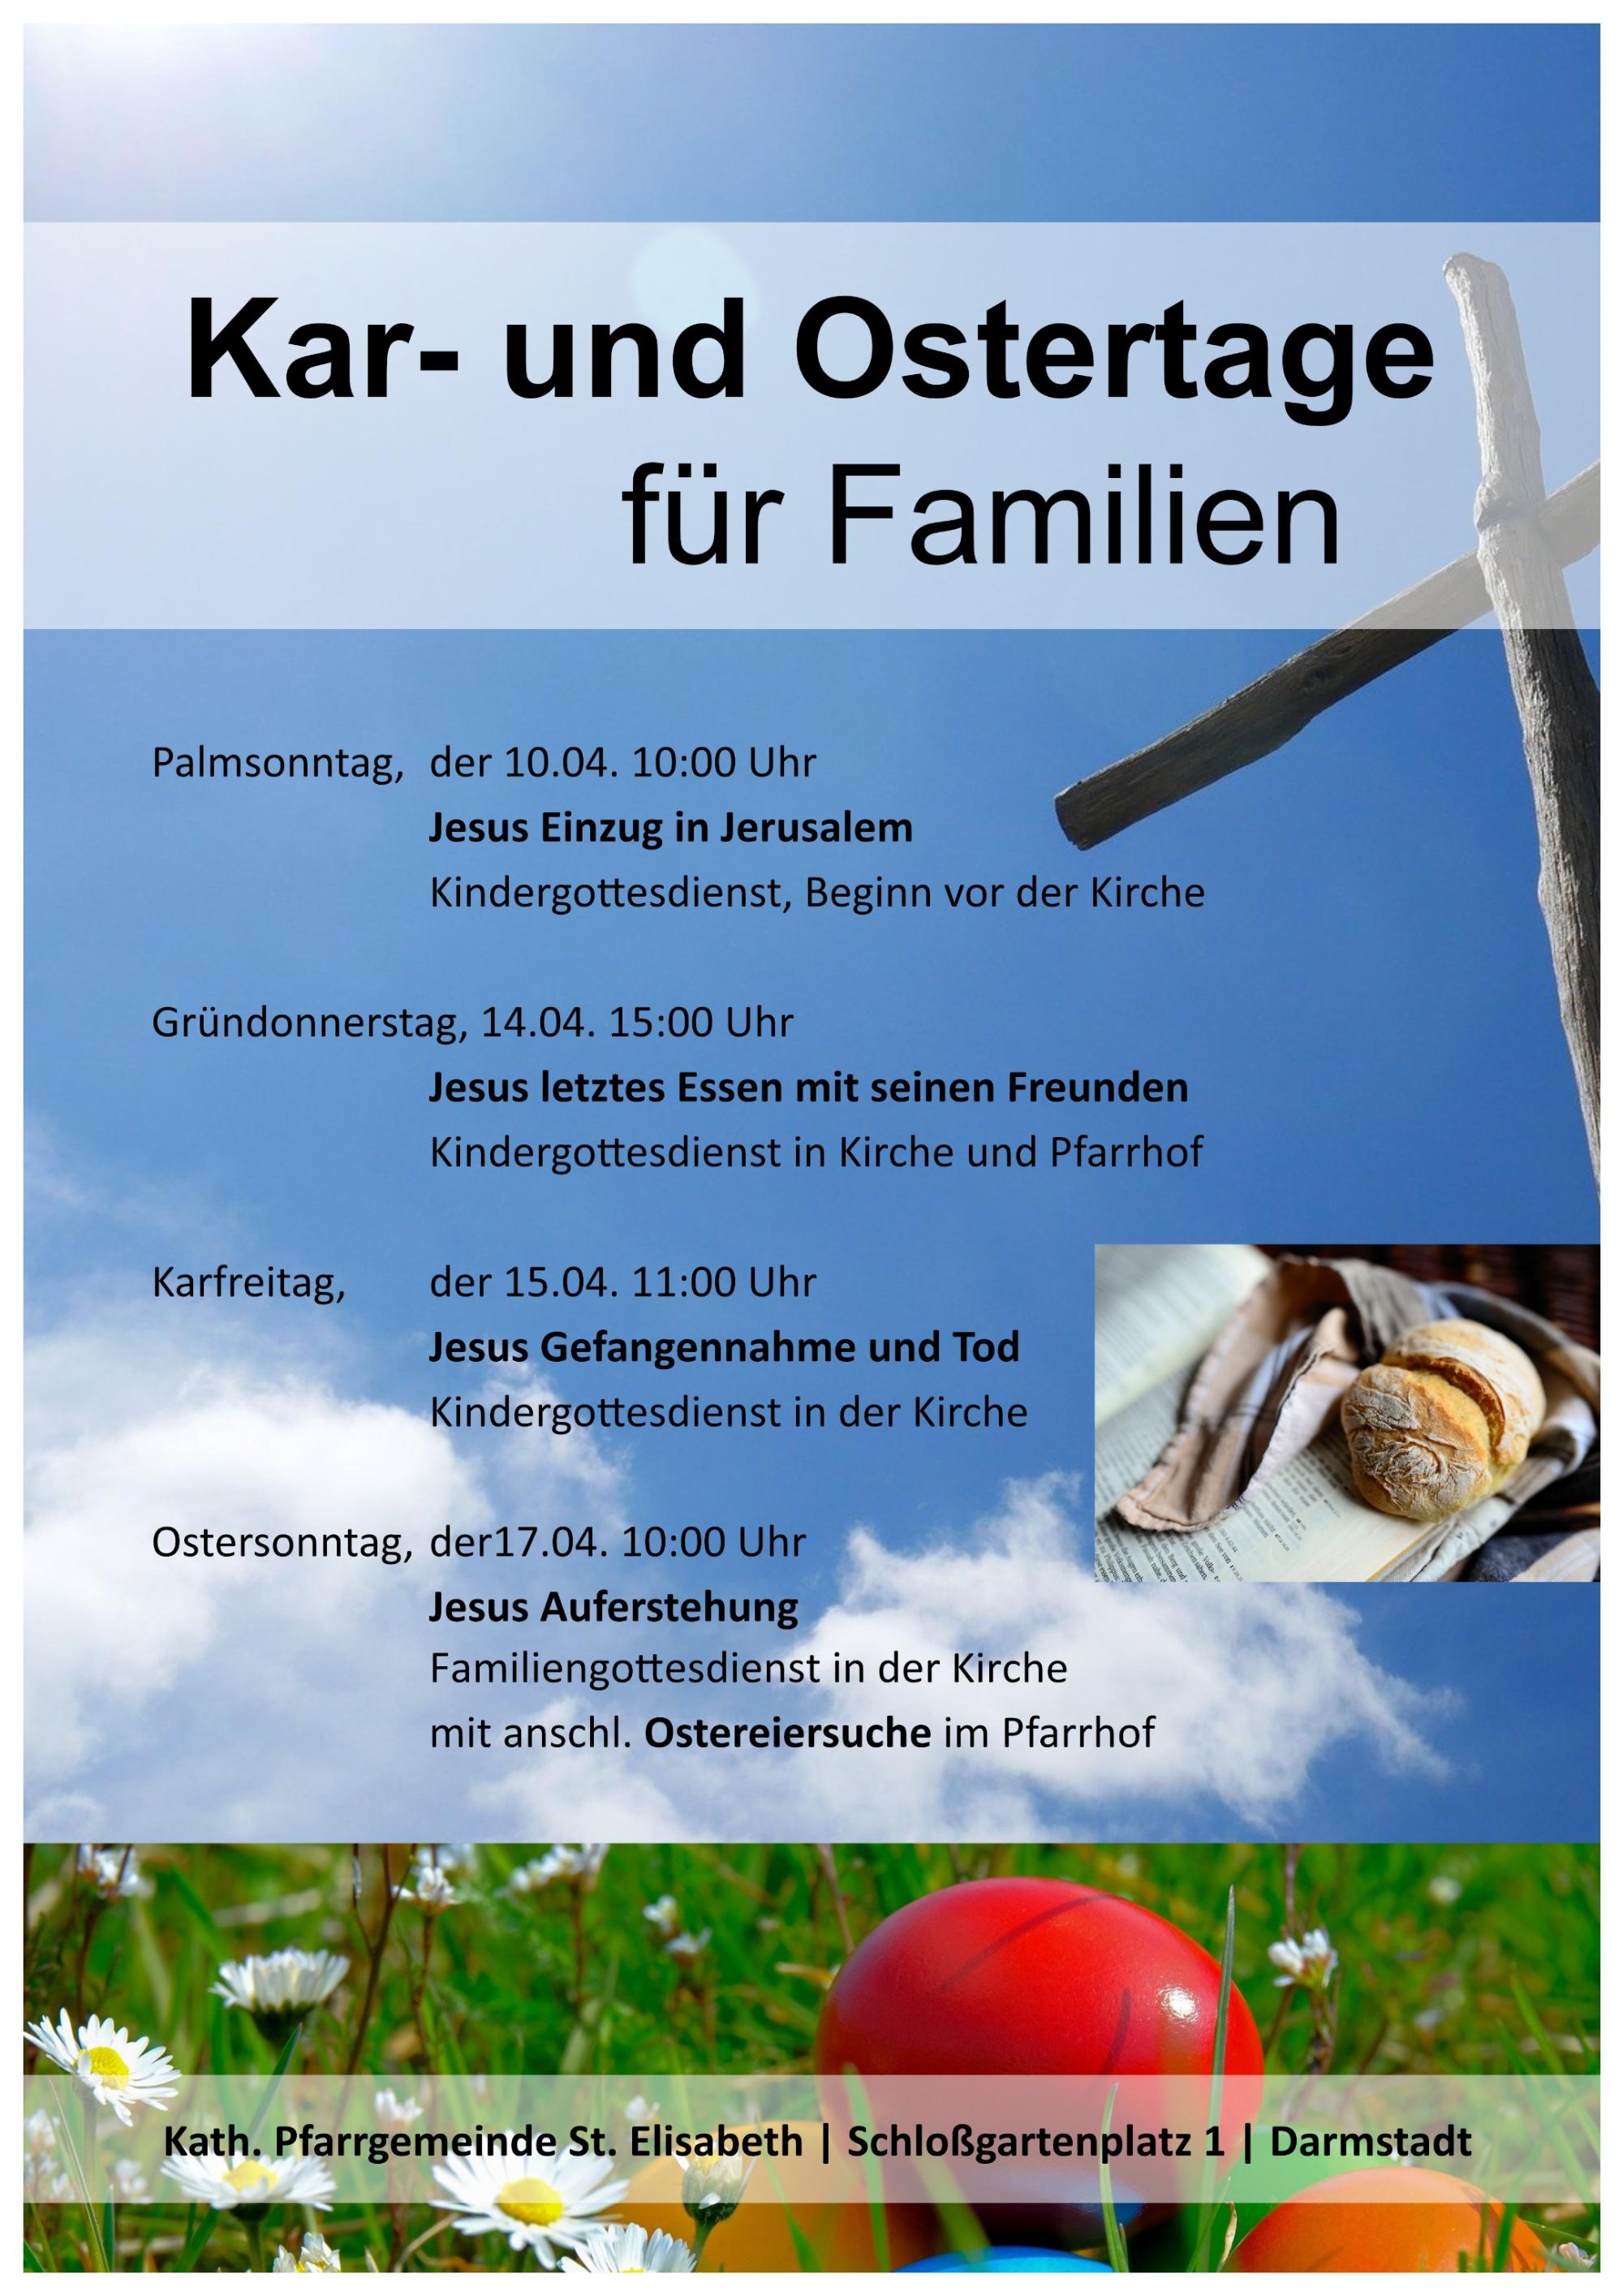 Kar- und Ostertage für Familien